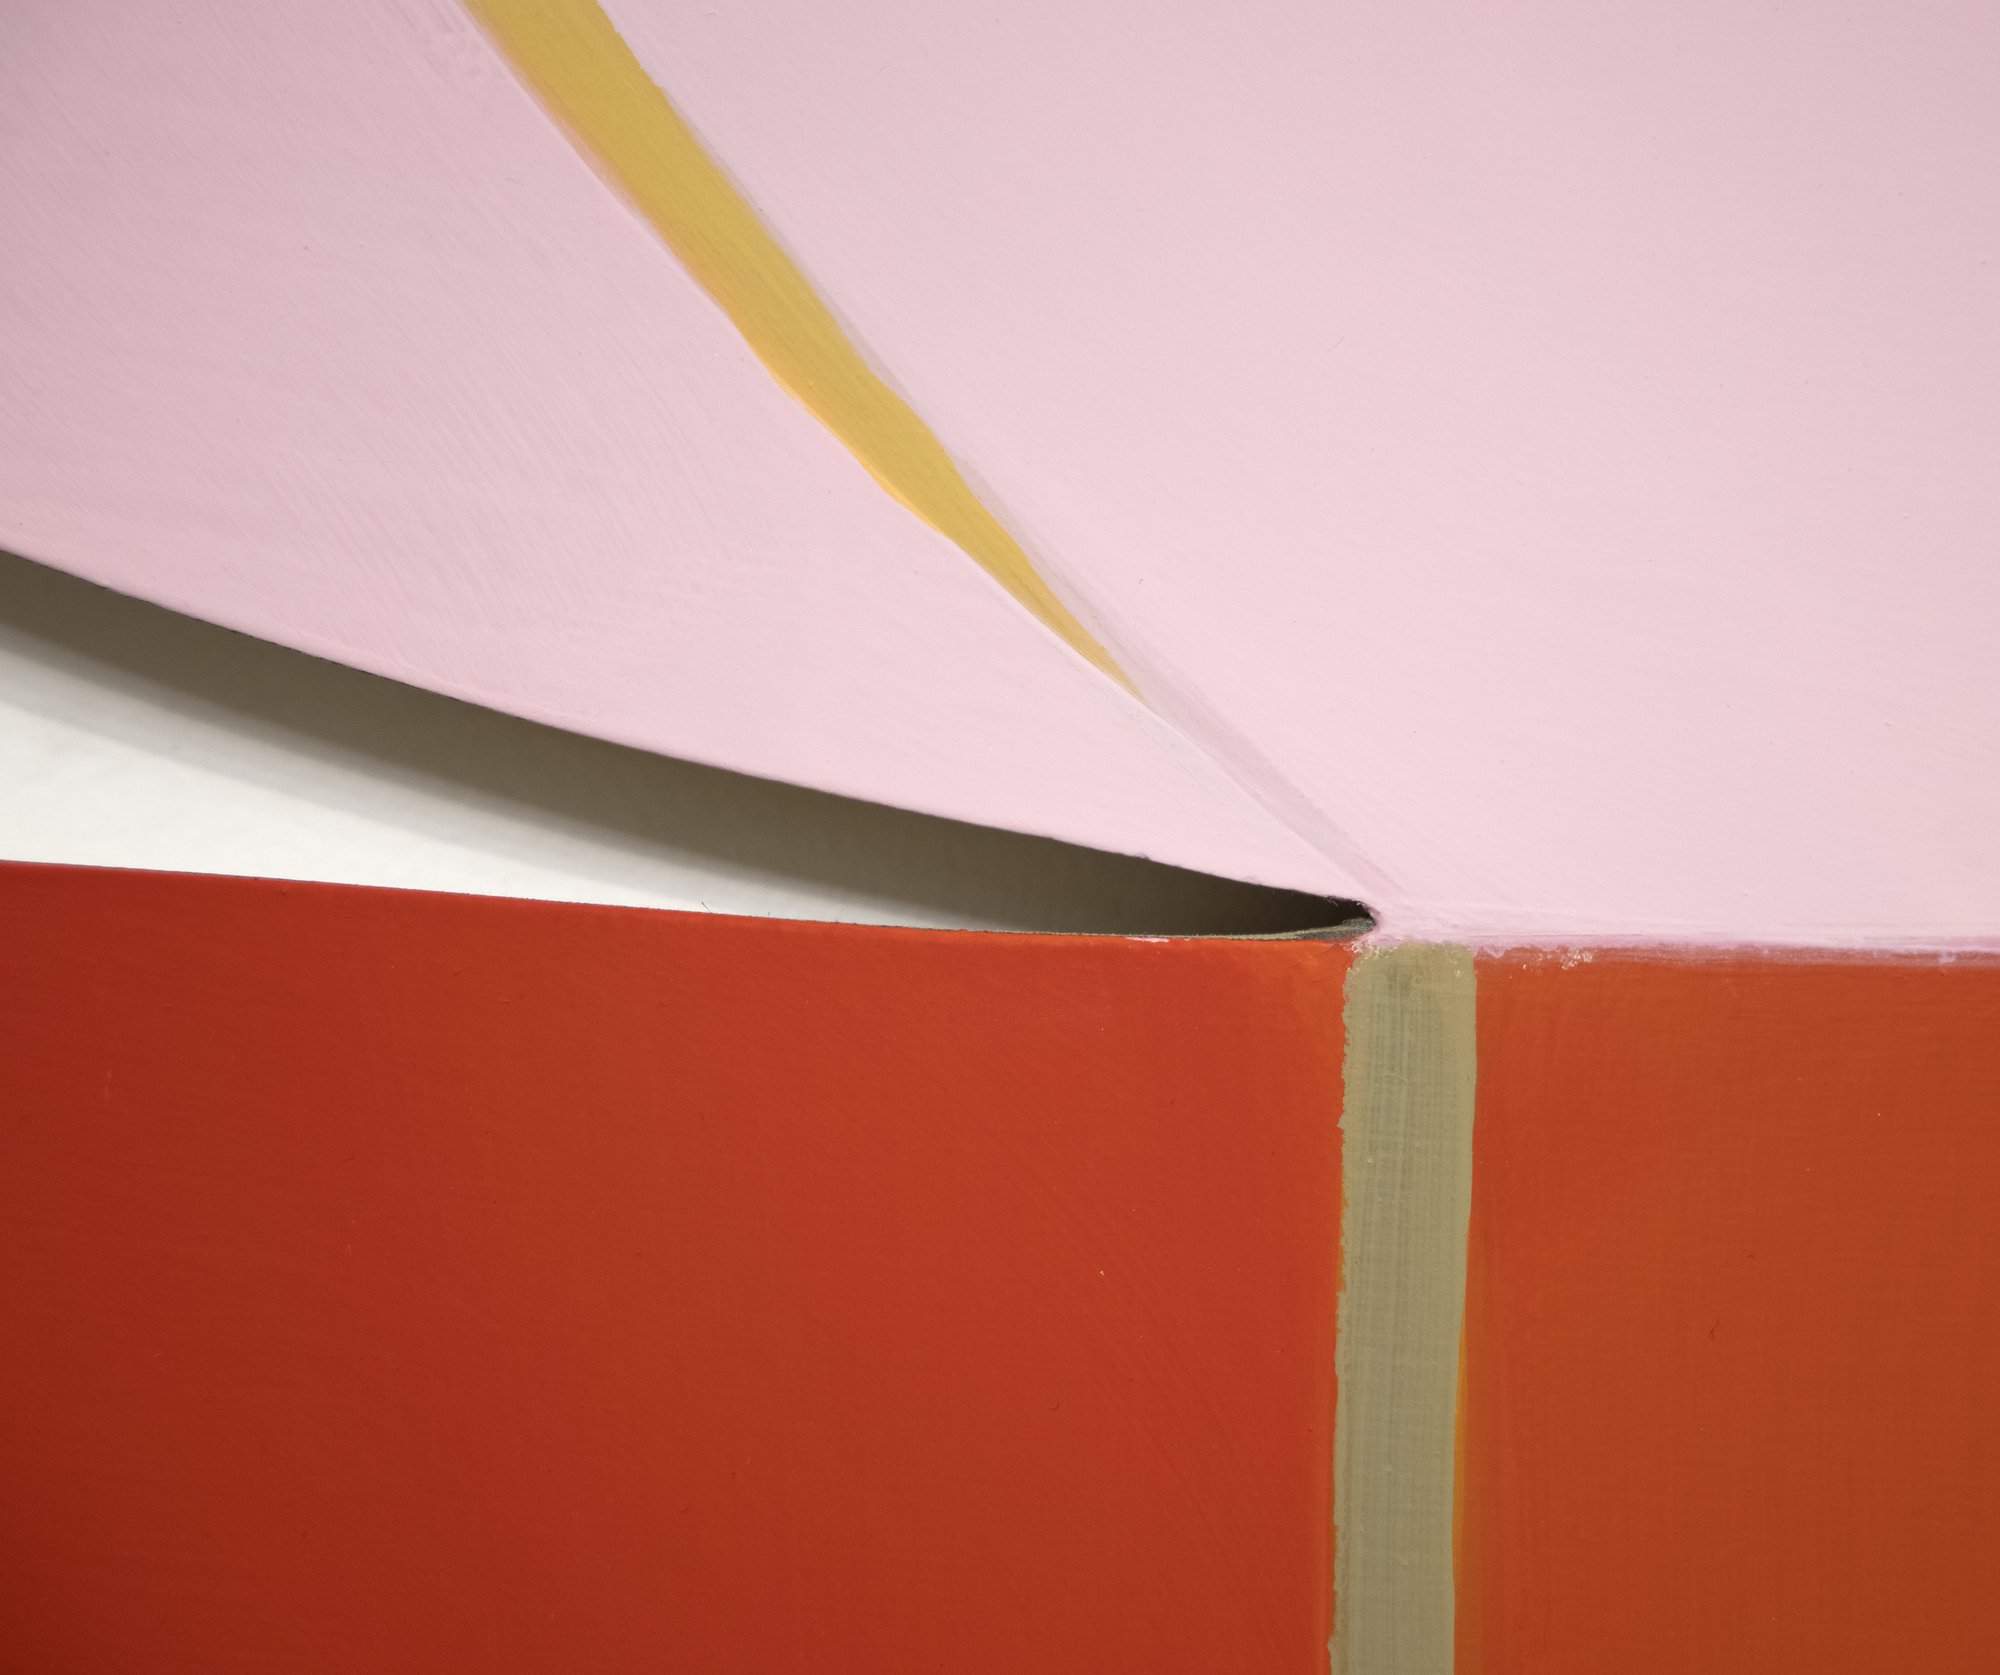 جوانا بوسيت دارت - بدون عنوان (دراسة الصحراء الحمراء) - أكريليك على لوح خشبي - 33 1/2 × 42 × 3/4 بوصة.